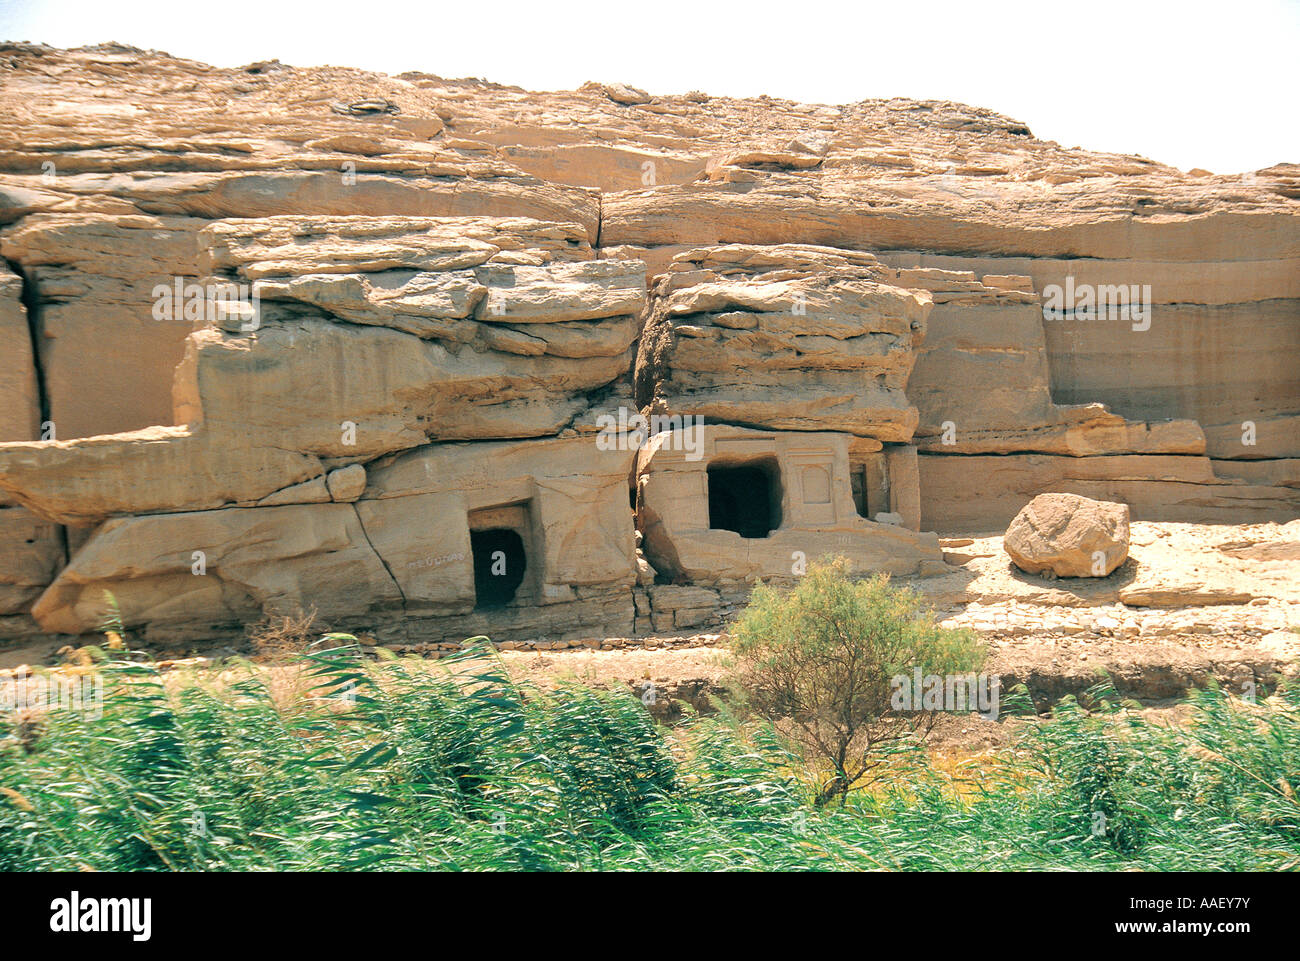 Anciennes tombes des nobles taillées dans la roche solide sur la rive ouest du Nil datant de 2 300 AV Assouan Egypte Banque D'Images